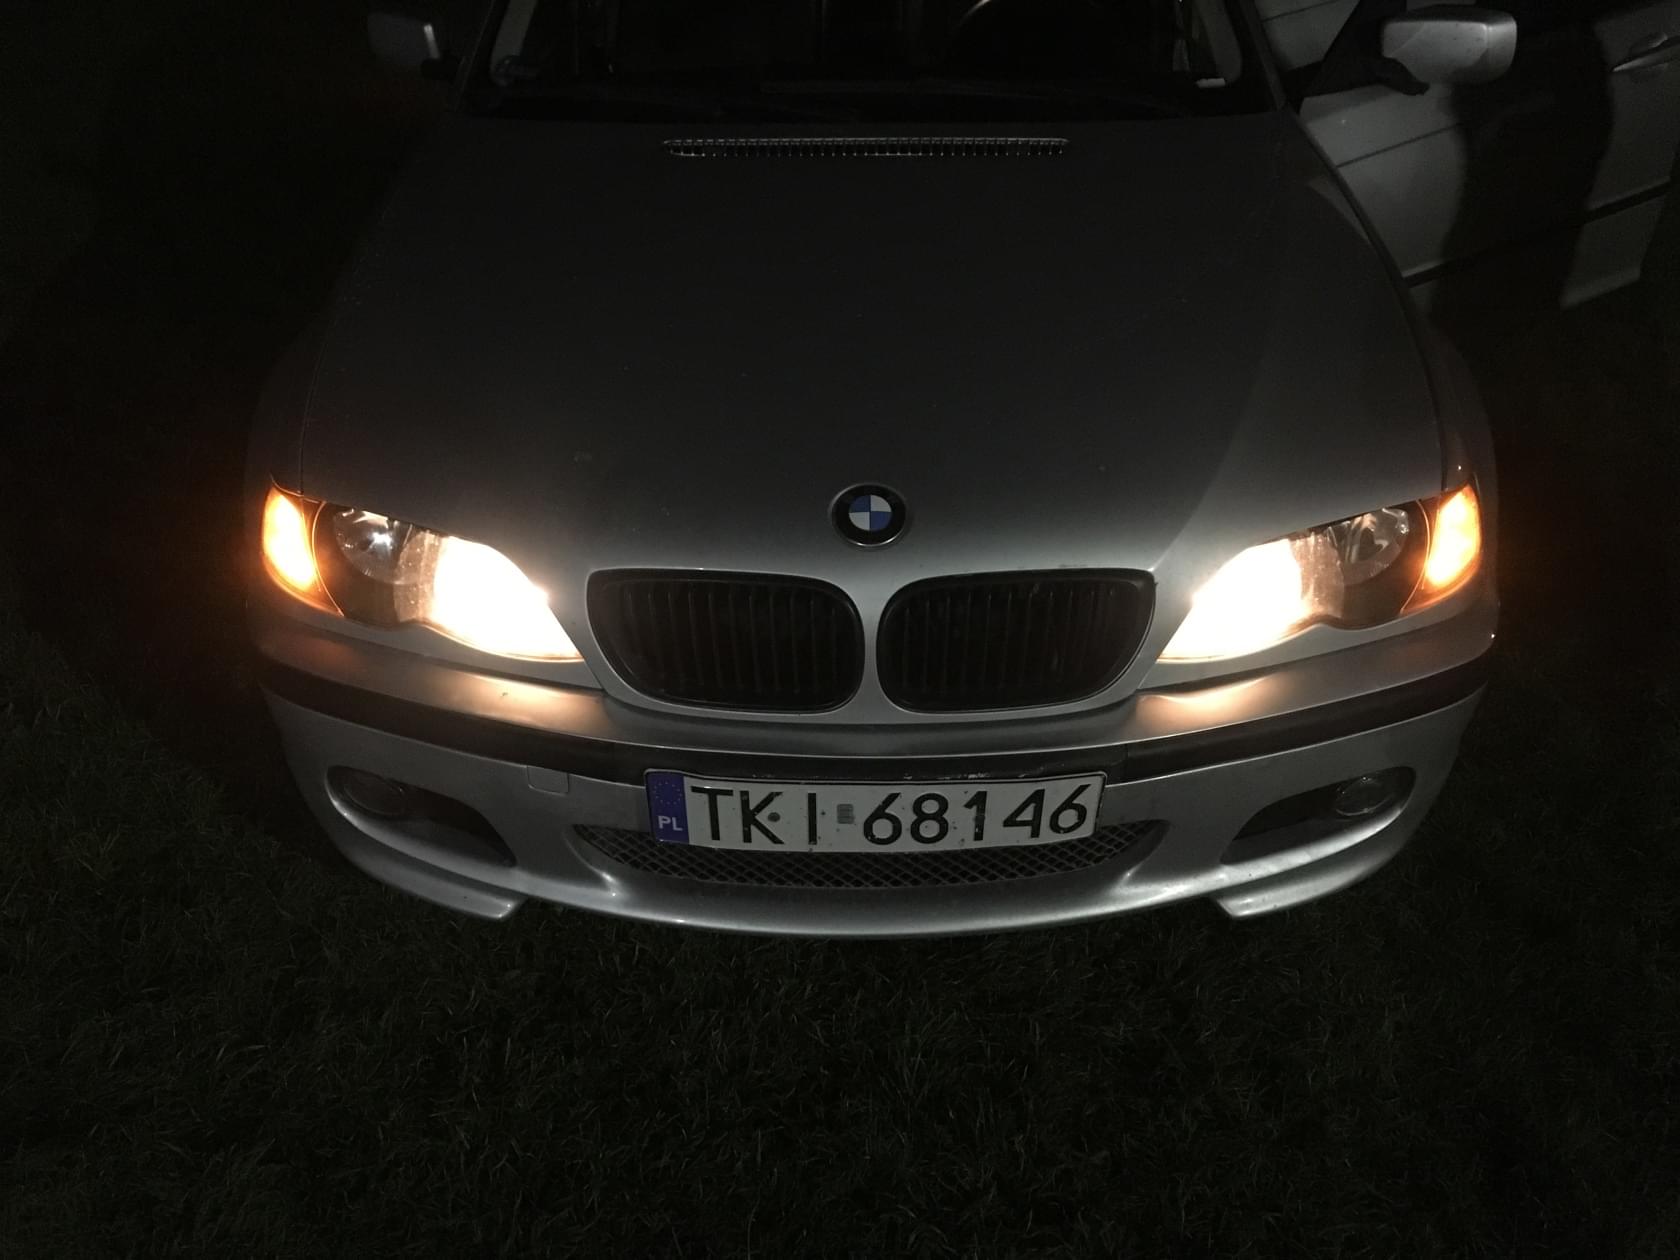 BMWklub.pl • Zobacz temat BMW E46 316i od zera do.